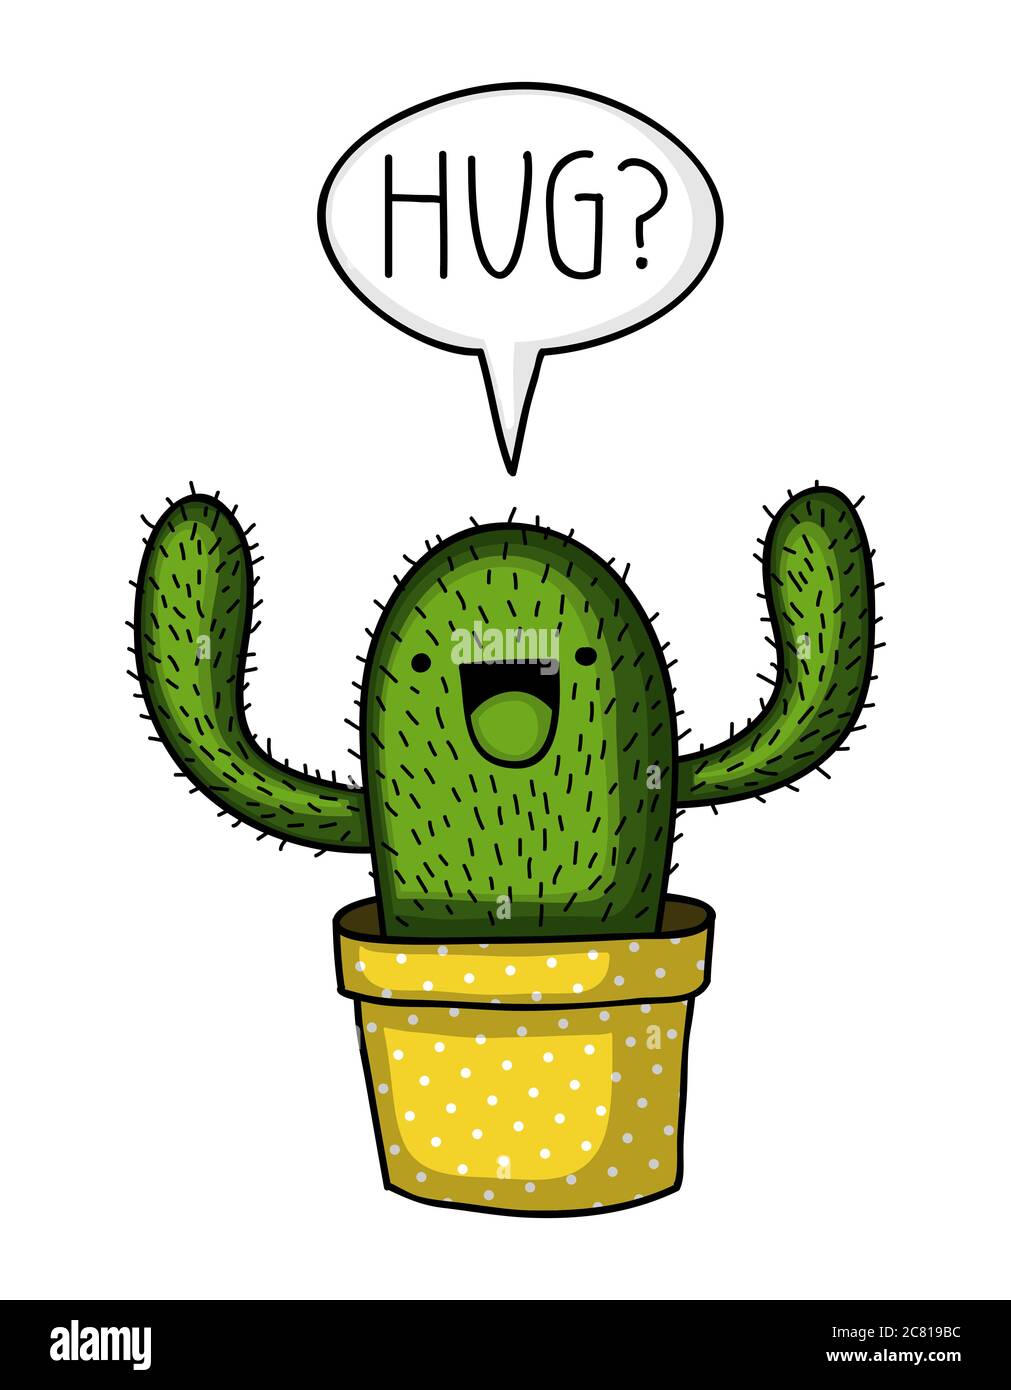 Mignon et drôle style kawaii cactus dans un pot à motifs à pois, demande d'un câlin Banque D'Images